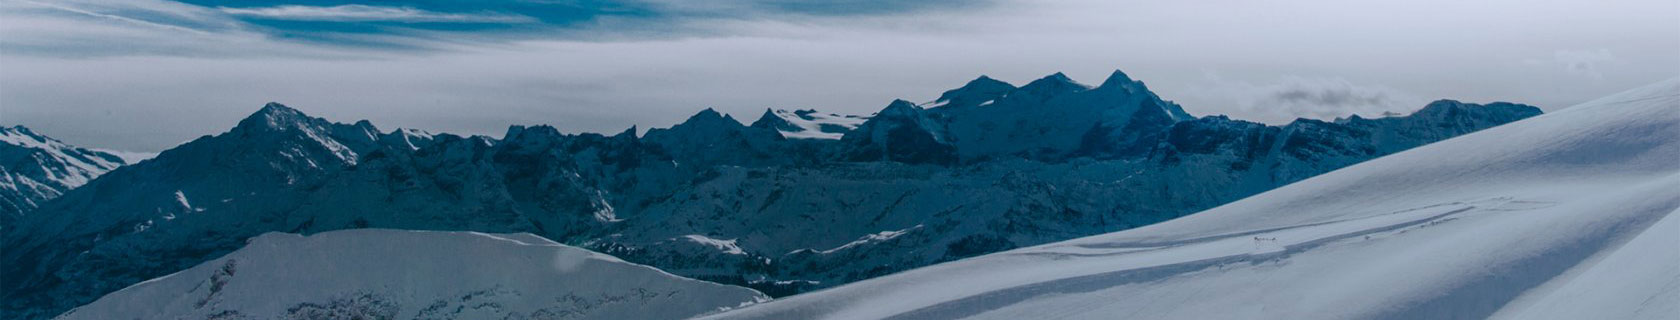 Комплект коньков лыжи SNOWRIDER